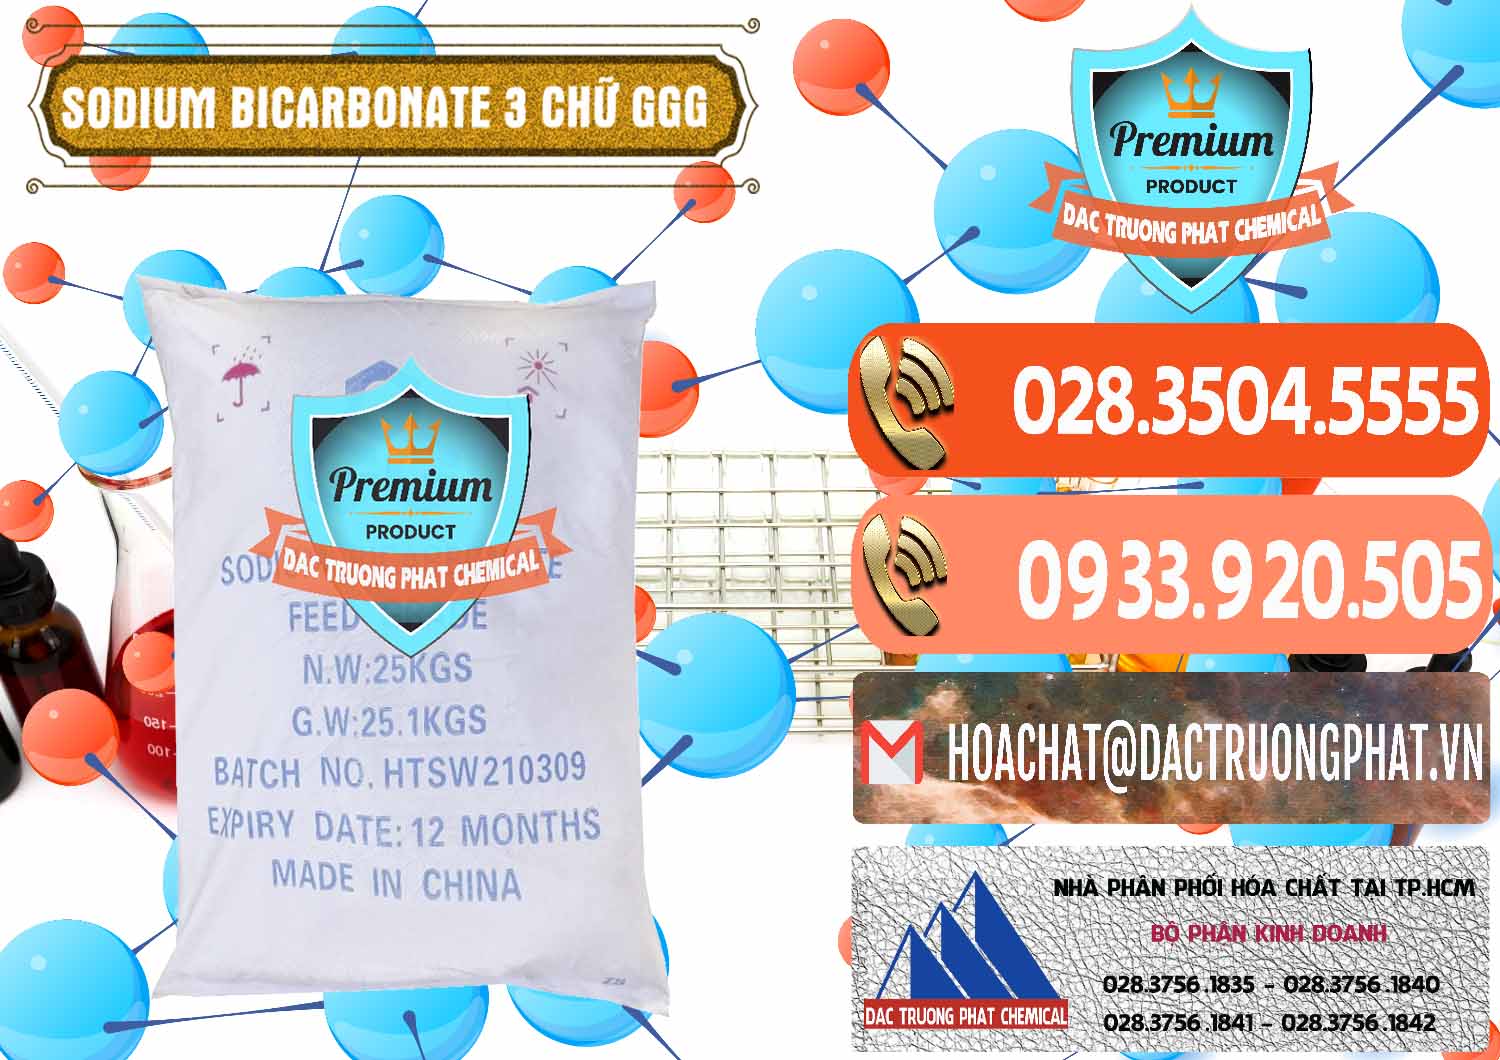 Nhà cung cấp _ bán Sodium Bicarbonate – Bicar NaHCO3 Food Grade 3 Chữ GGG Trung Quốc China - 0259 - Nơi phân phối và bán hóa chất tại TP.HCM - hoachatmientay.com